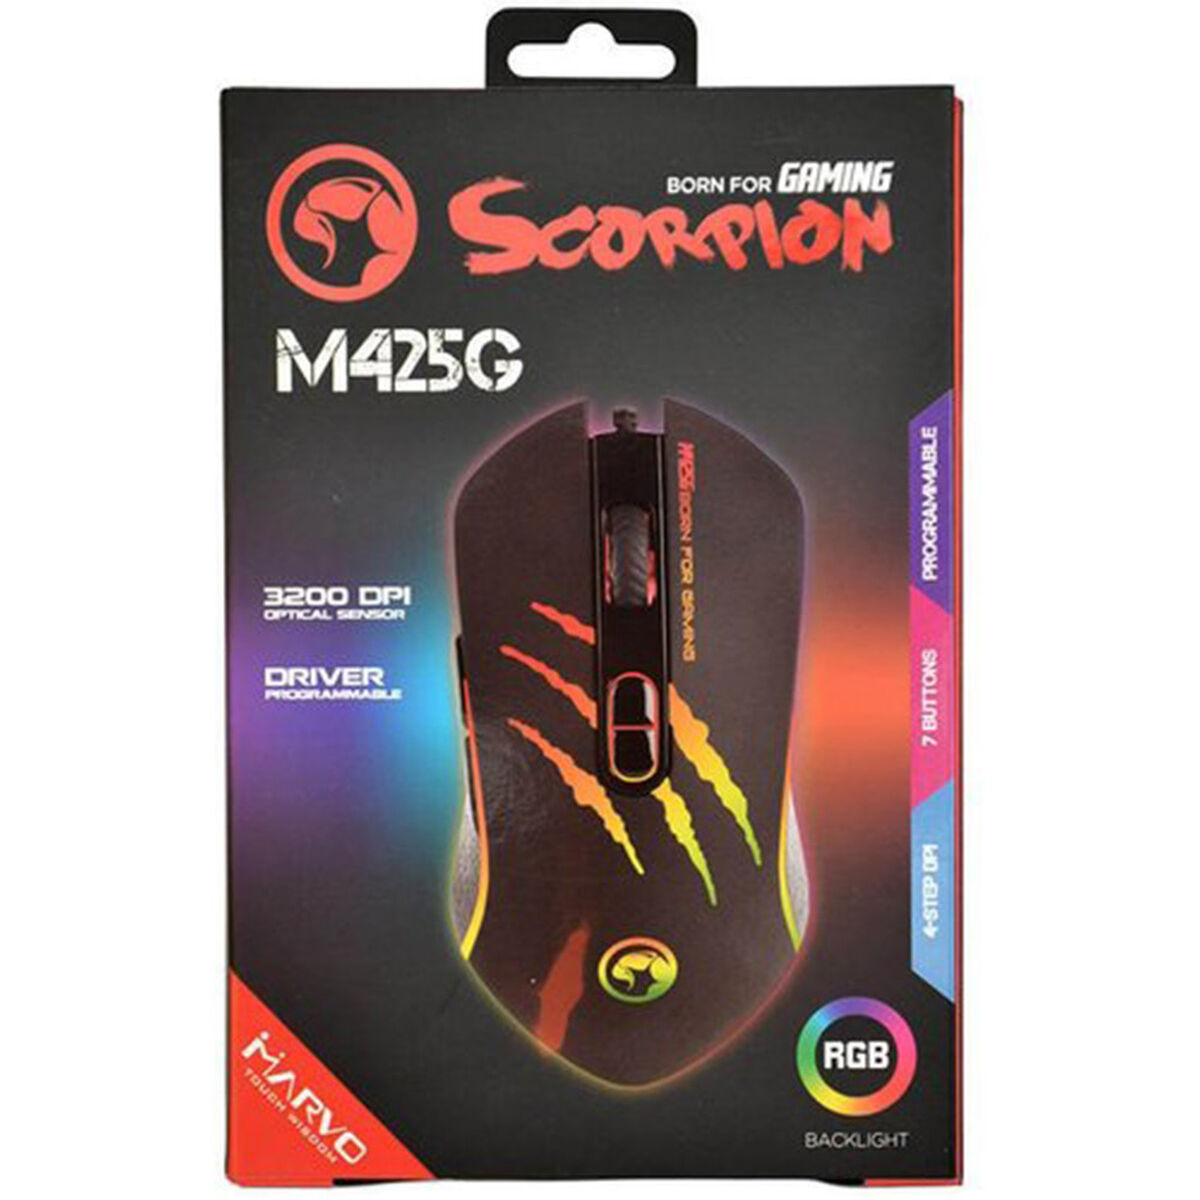 Mouse Gamer Scorpion LED M425G Marvo